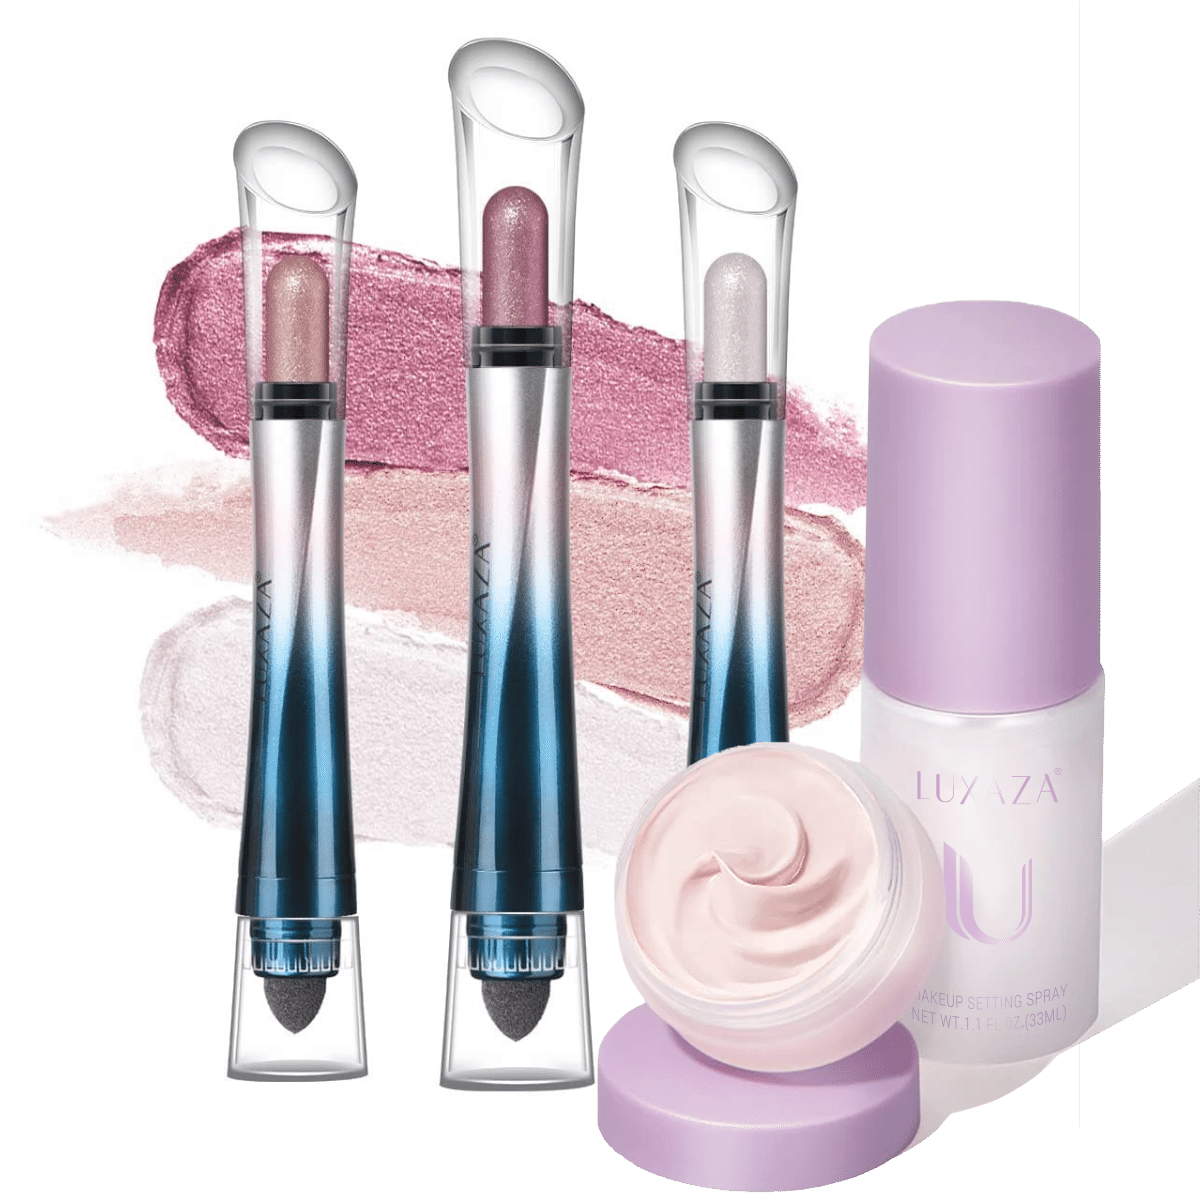 LUXAZA 3-in-1 Eye Makeup Kit(5pcs) - Pink Sceptre Set